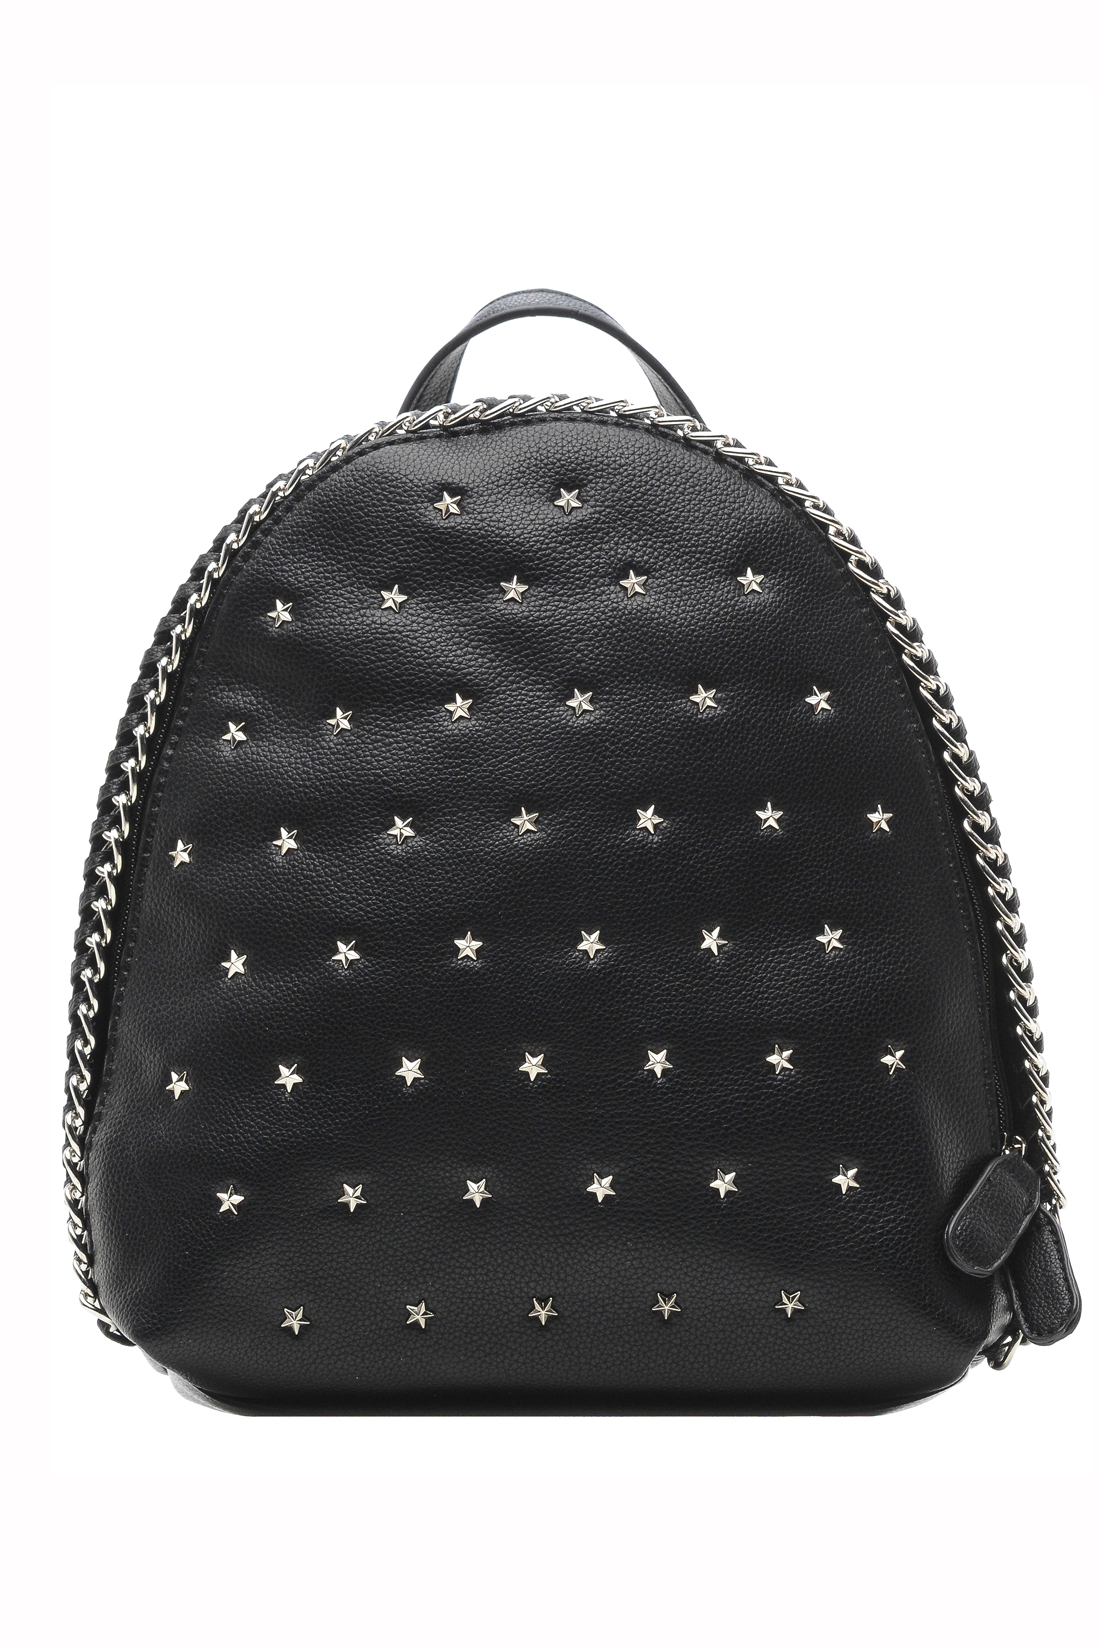 Рюкзак с металлической отделкой (арт. baon B379004), размер Без/раз, цвет черный